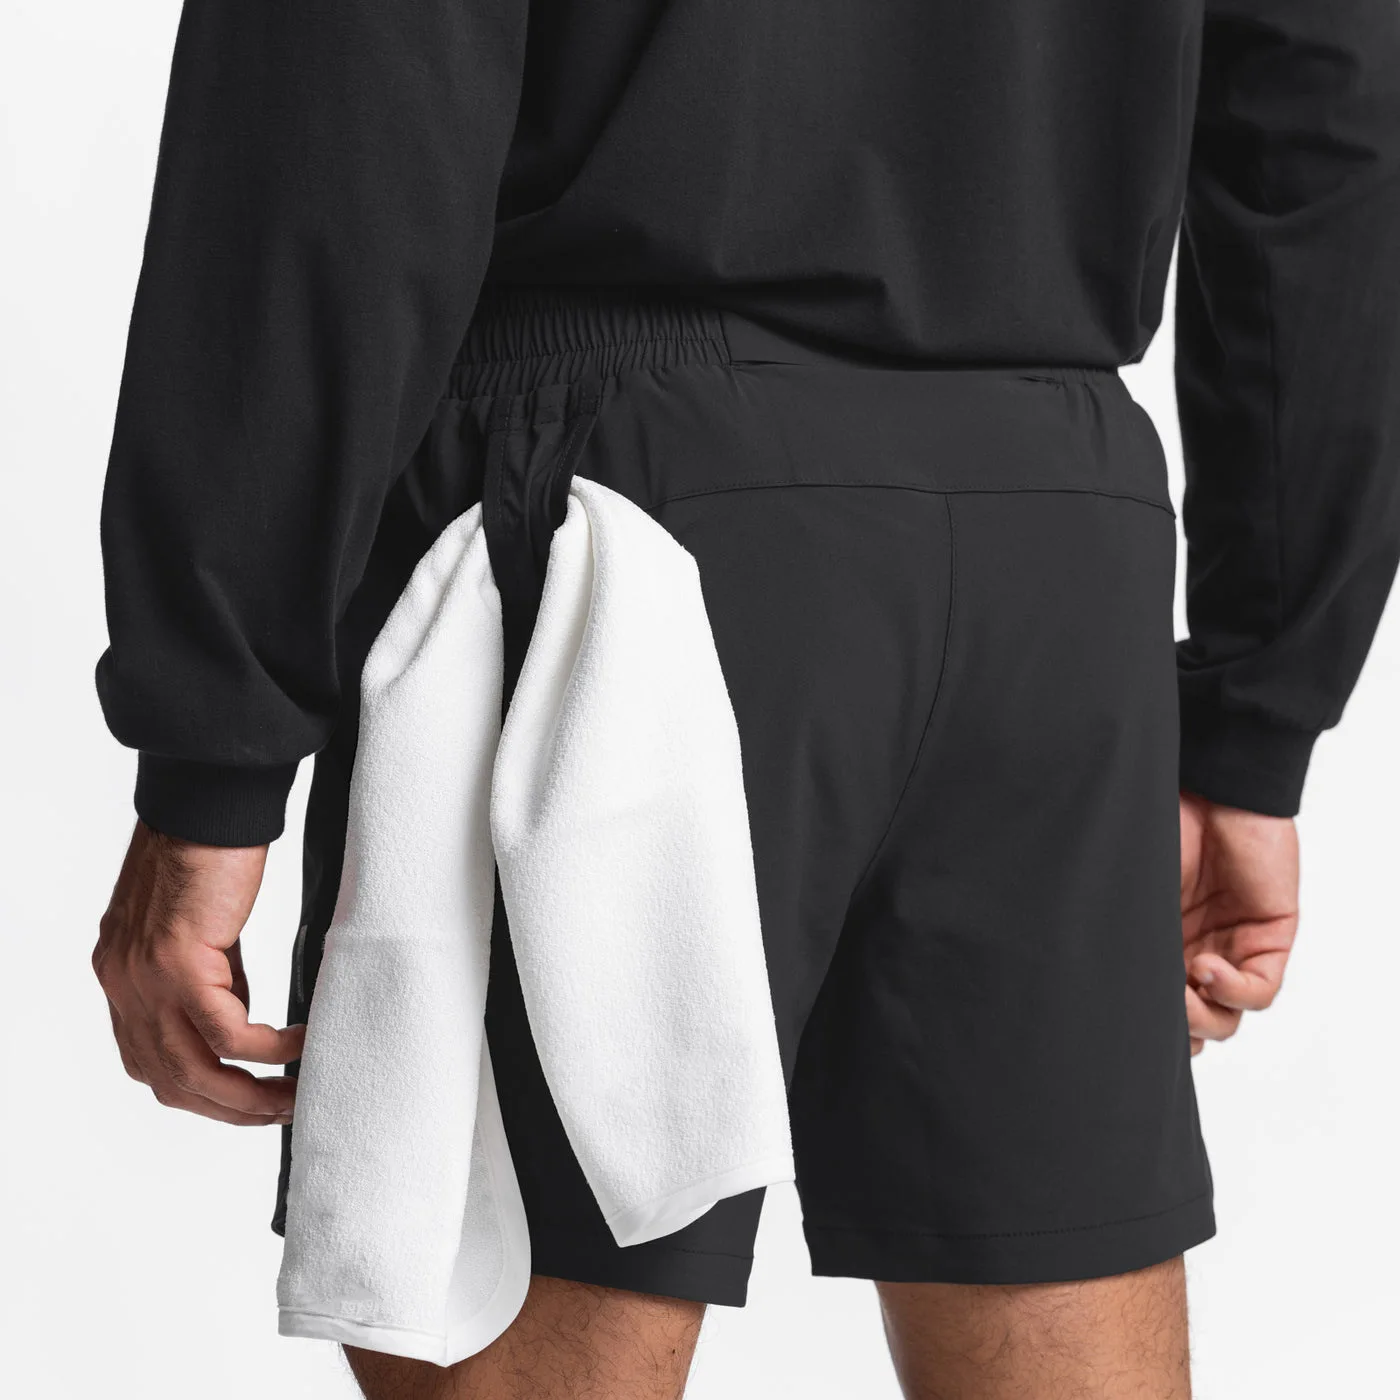 Мужские шорты для бега, быстросохнущие шорты для спортзала, для фитнеса, для занятий баскетболом, шорты для тренировок с полотенцем, короткие штаны на пуговицах